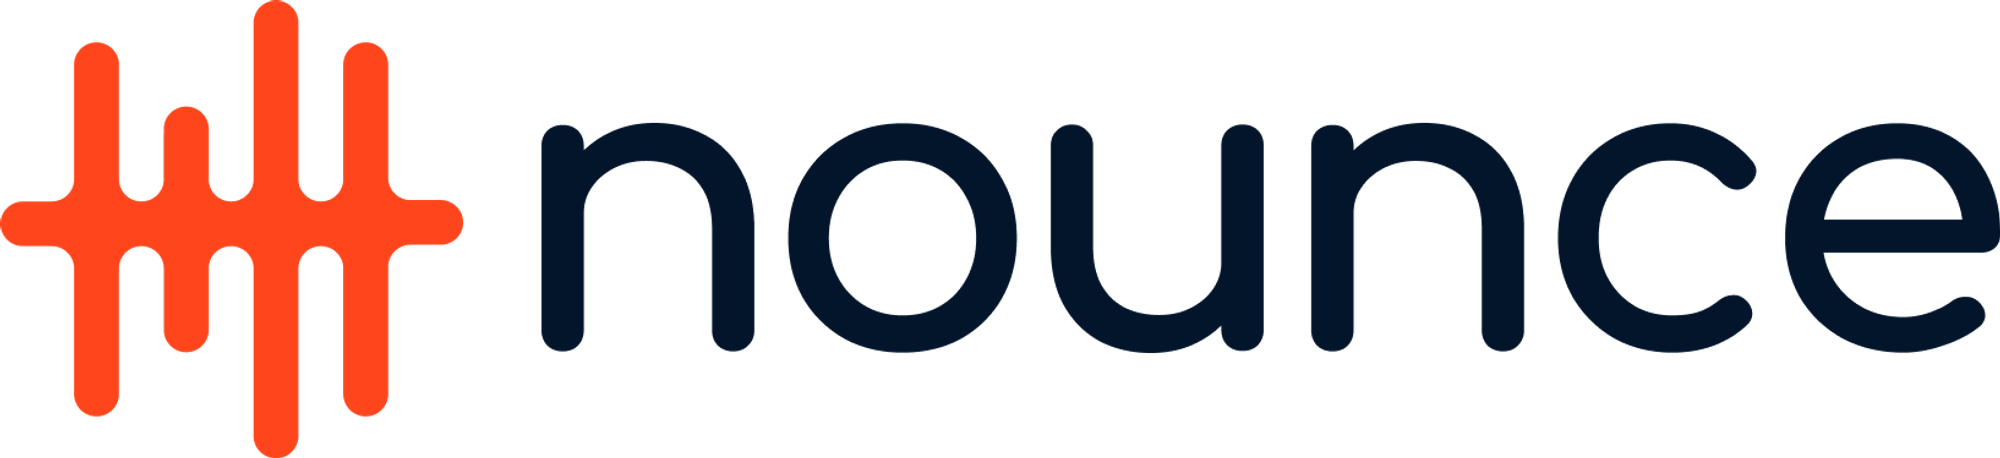 Modern logo design for nounce.io